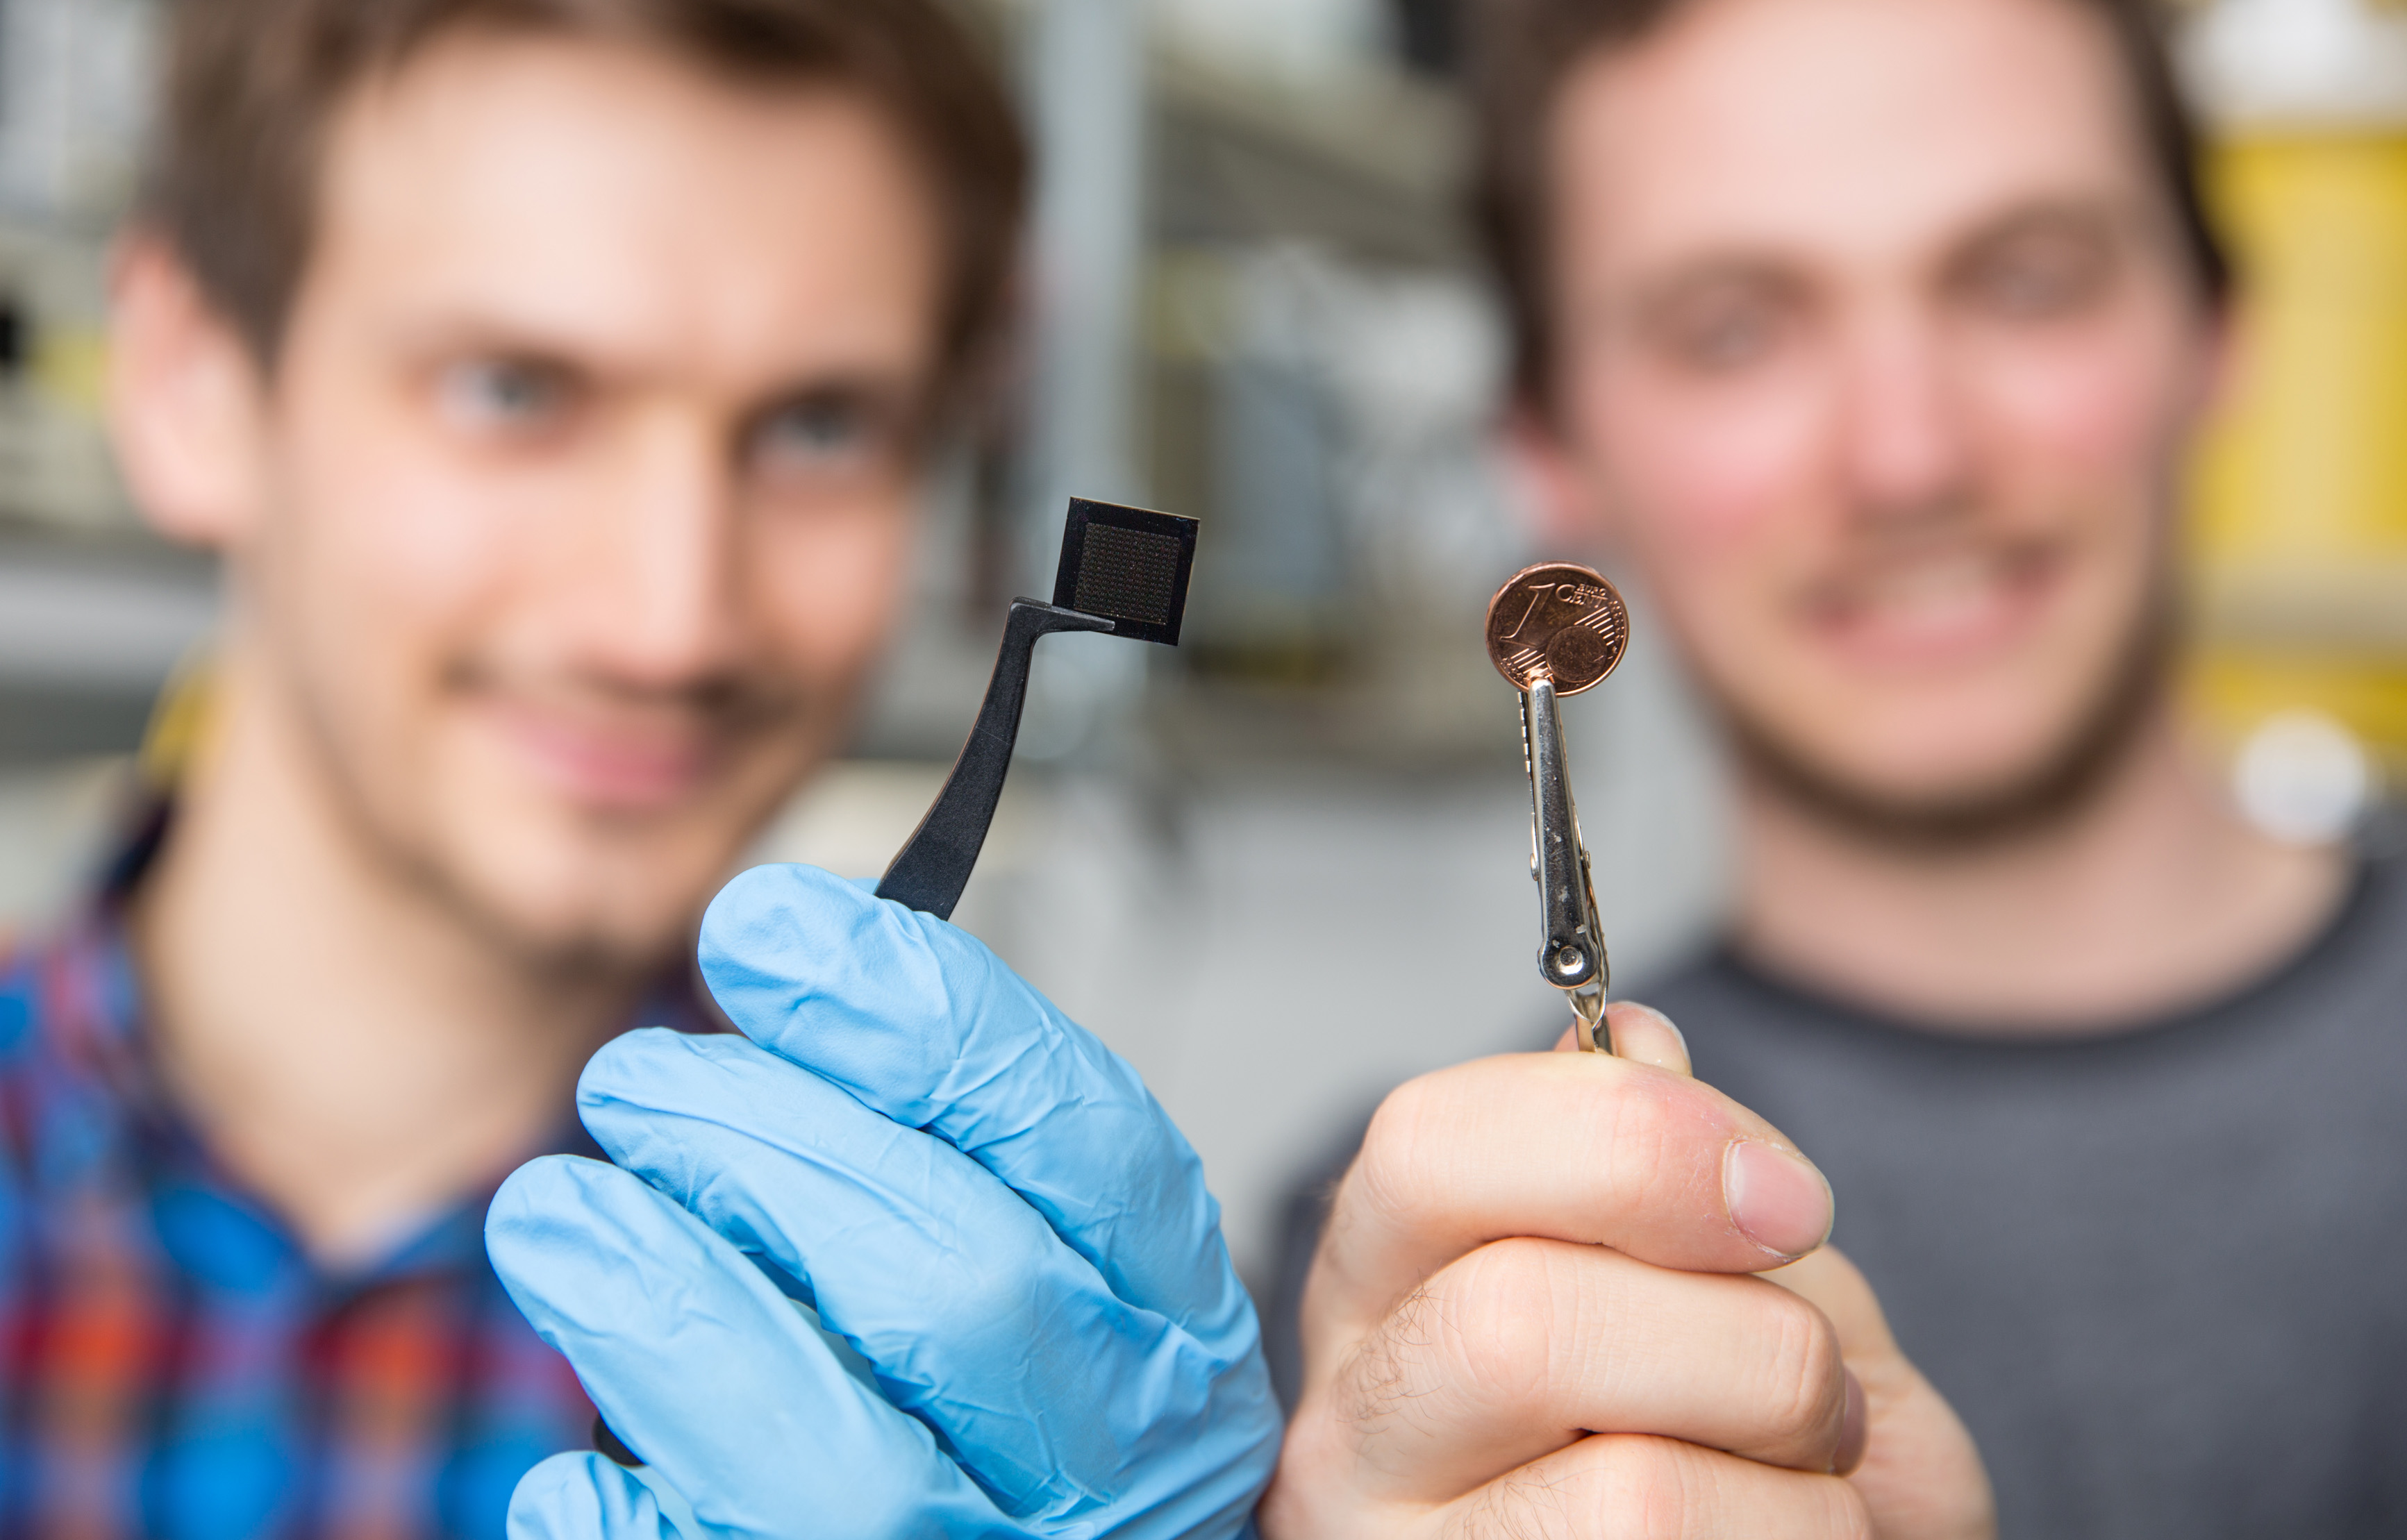 Los microchips ópticos tienen aproximadamente el tamaño de un céntimo de euro.© WWU - Peter Leßmann.